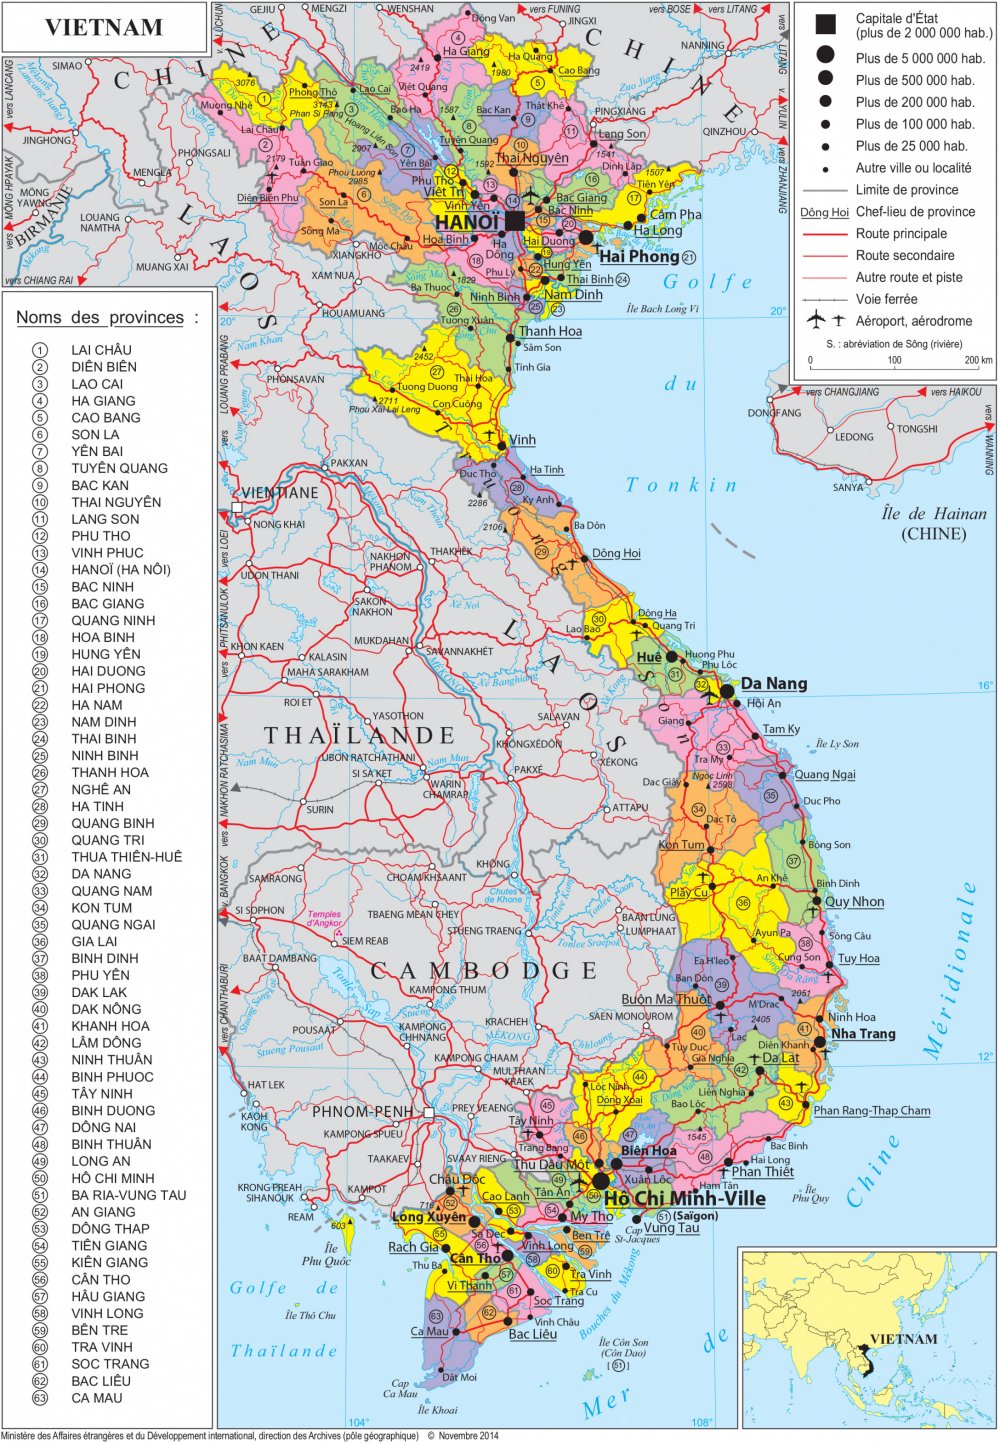 Bản đồ hành chính khổ lớn các tỉnh Việt Nam 2024: Được thiết kế đặc biệt với kích thước khổ lớn, bản đồ hành chính 63 tỉnh thành Việt Nam năm 2024 giúp bạn tiếp cận thông tin chi tiết về quy hoạch đất đai, hành chính tại từng tỉnh thành, trợ giúp cho tất cả các nhà đầu tư và doanh nghiệp và cộng đồng sử dụng thông tin.